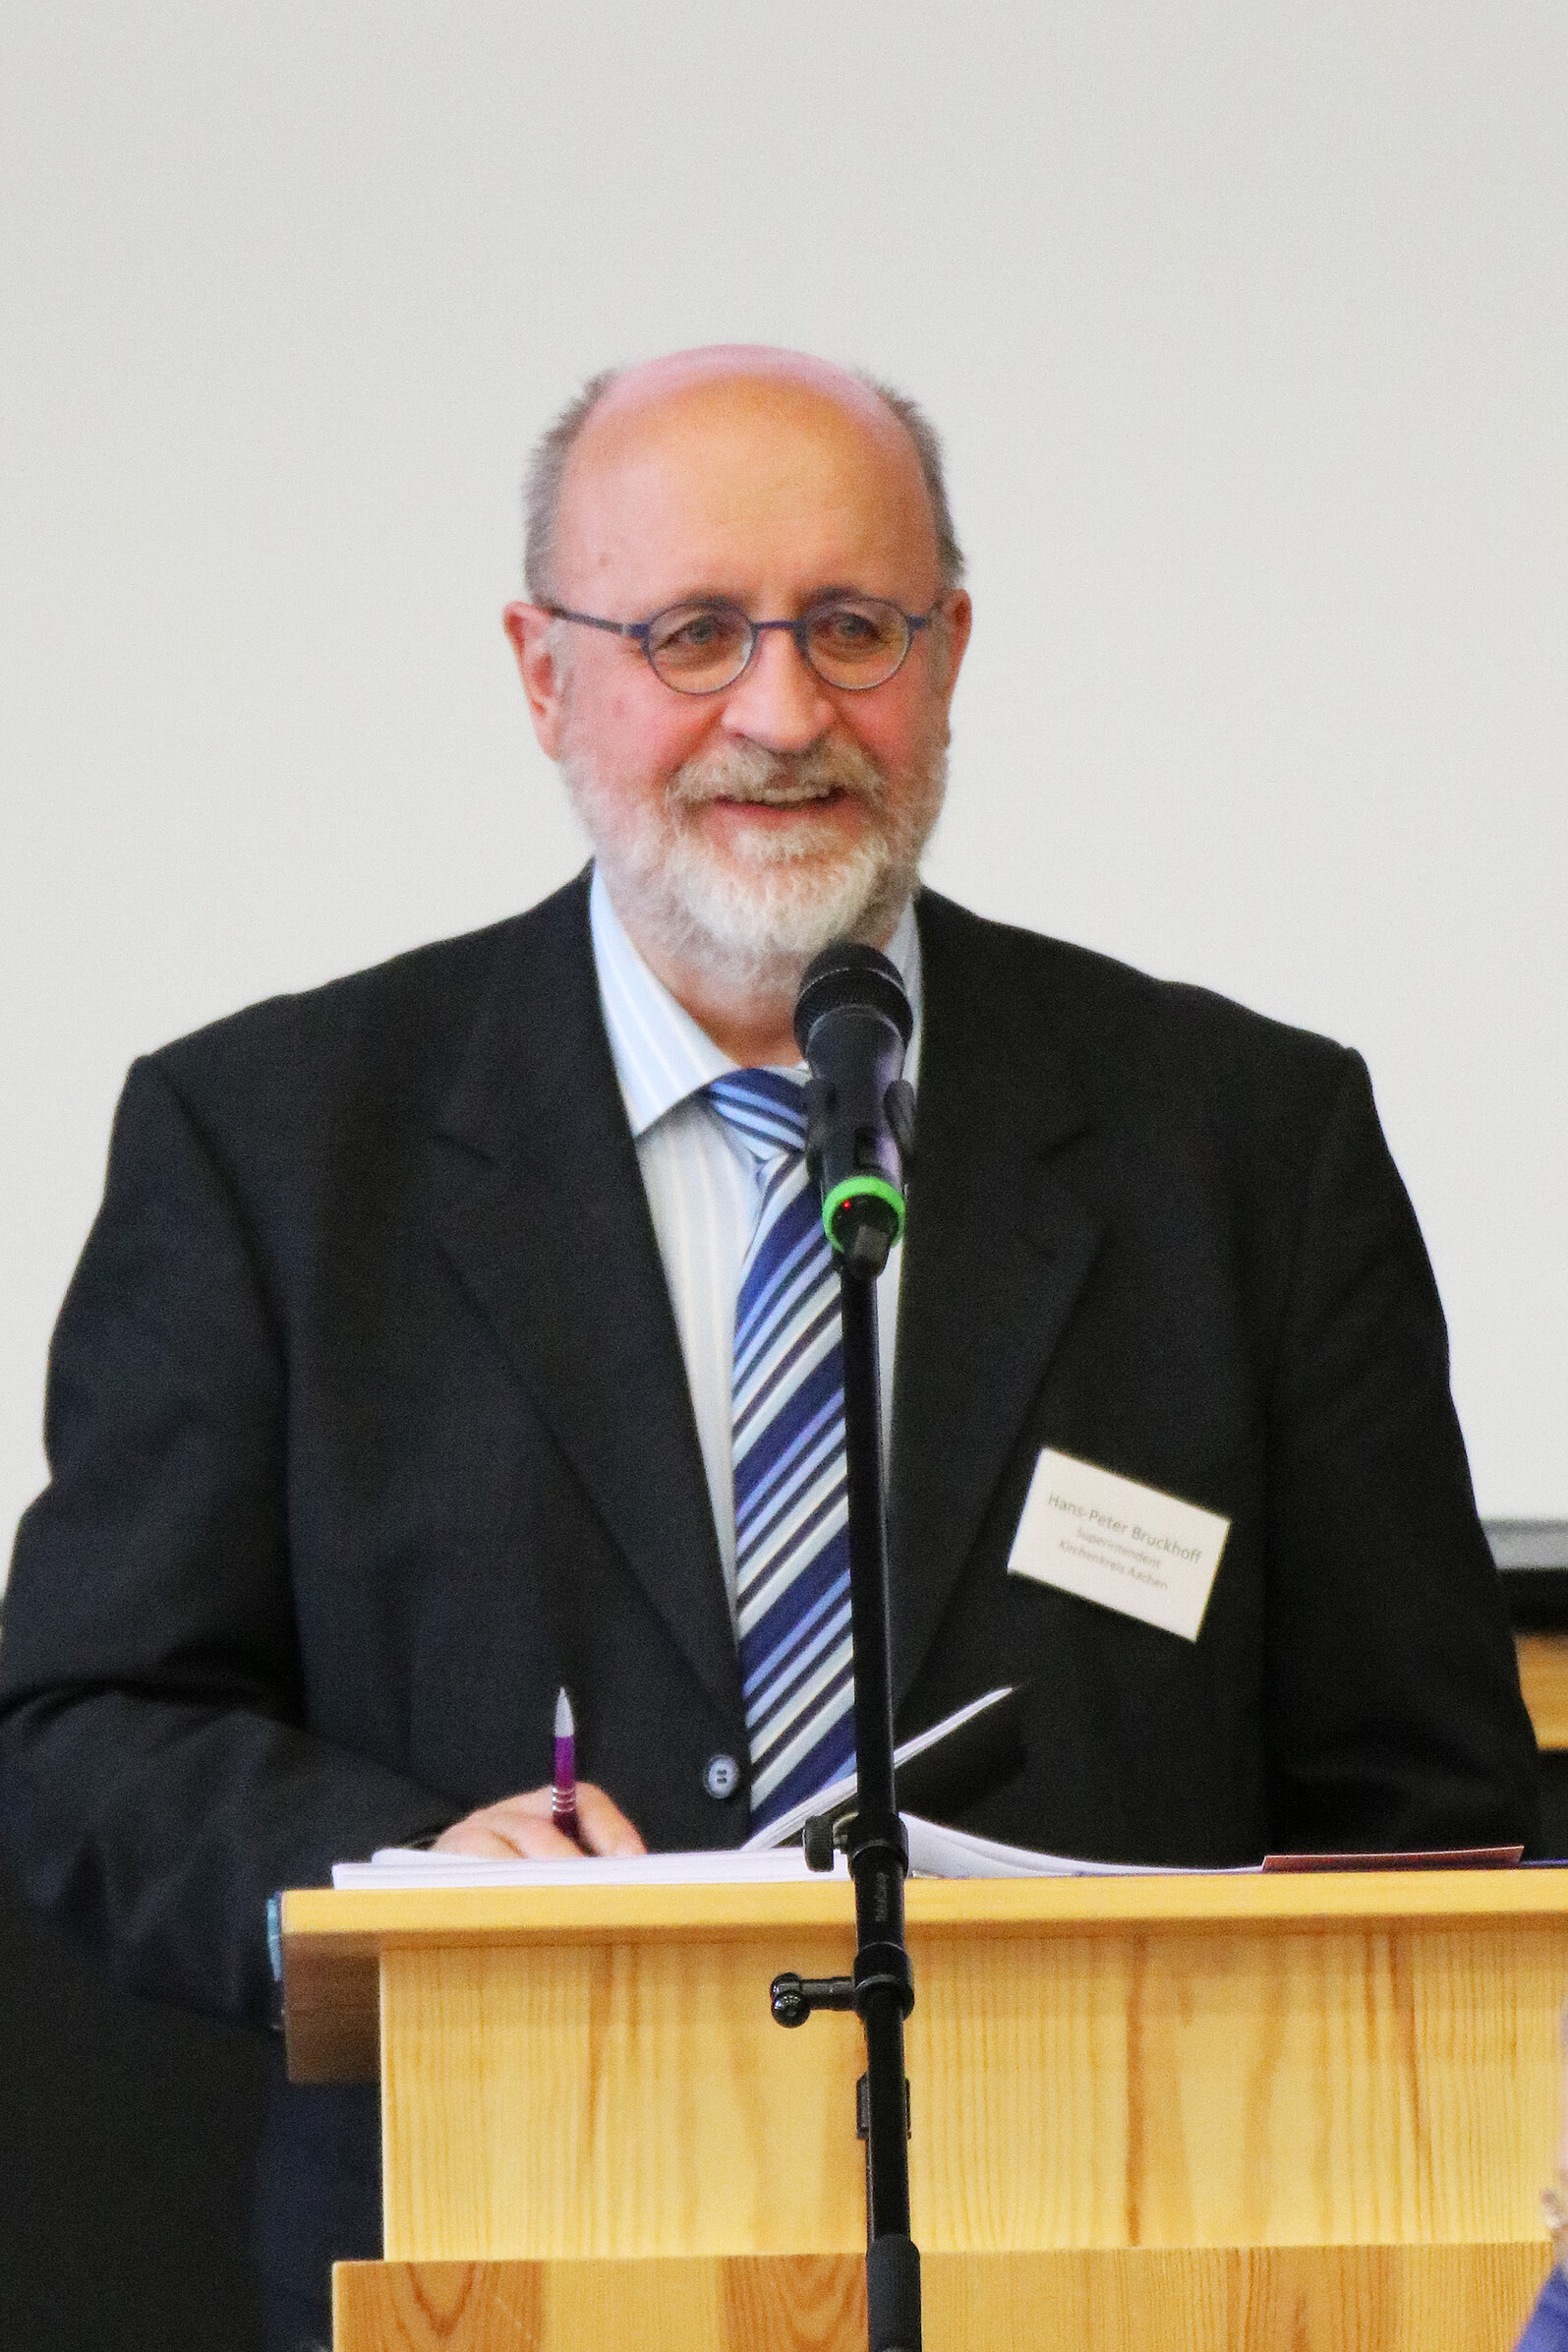 Superintendent Pfarrer Hans-Peter Bruckhoff leitete die Kreissynode. Er ist seit 1996 Superintendent des Ev. Kirchenkreises Aachen und damit der dienstälteste Superintendent der rheinischen Landeskirche.